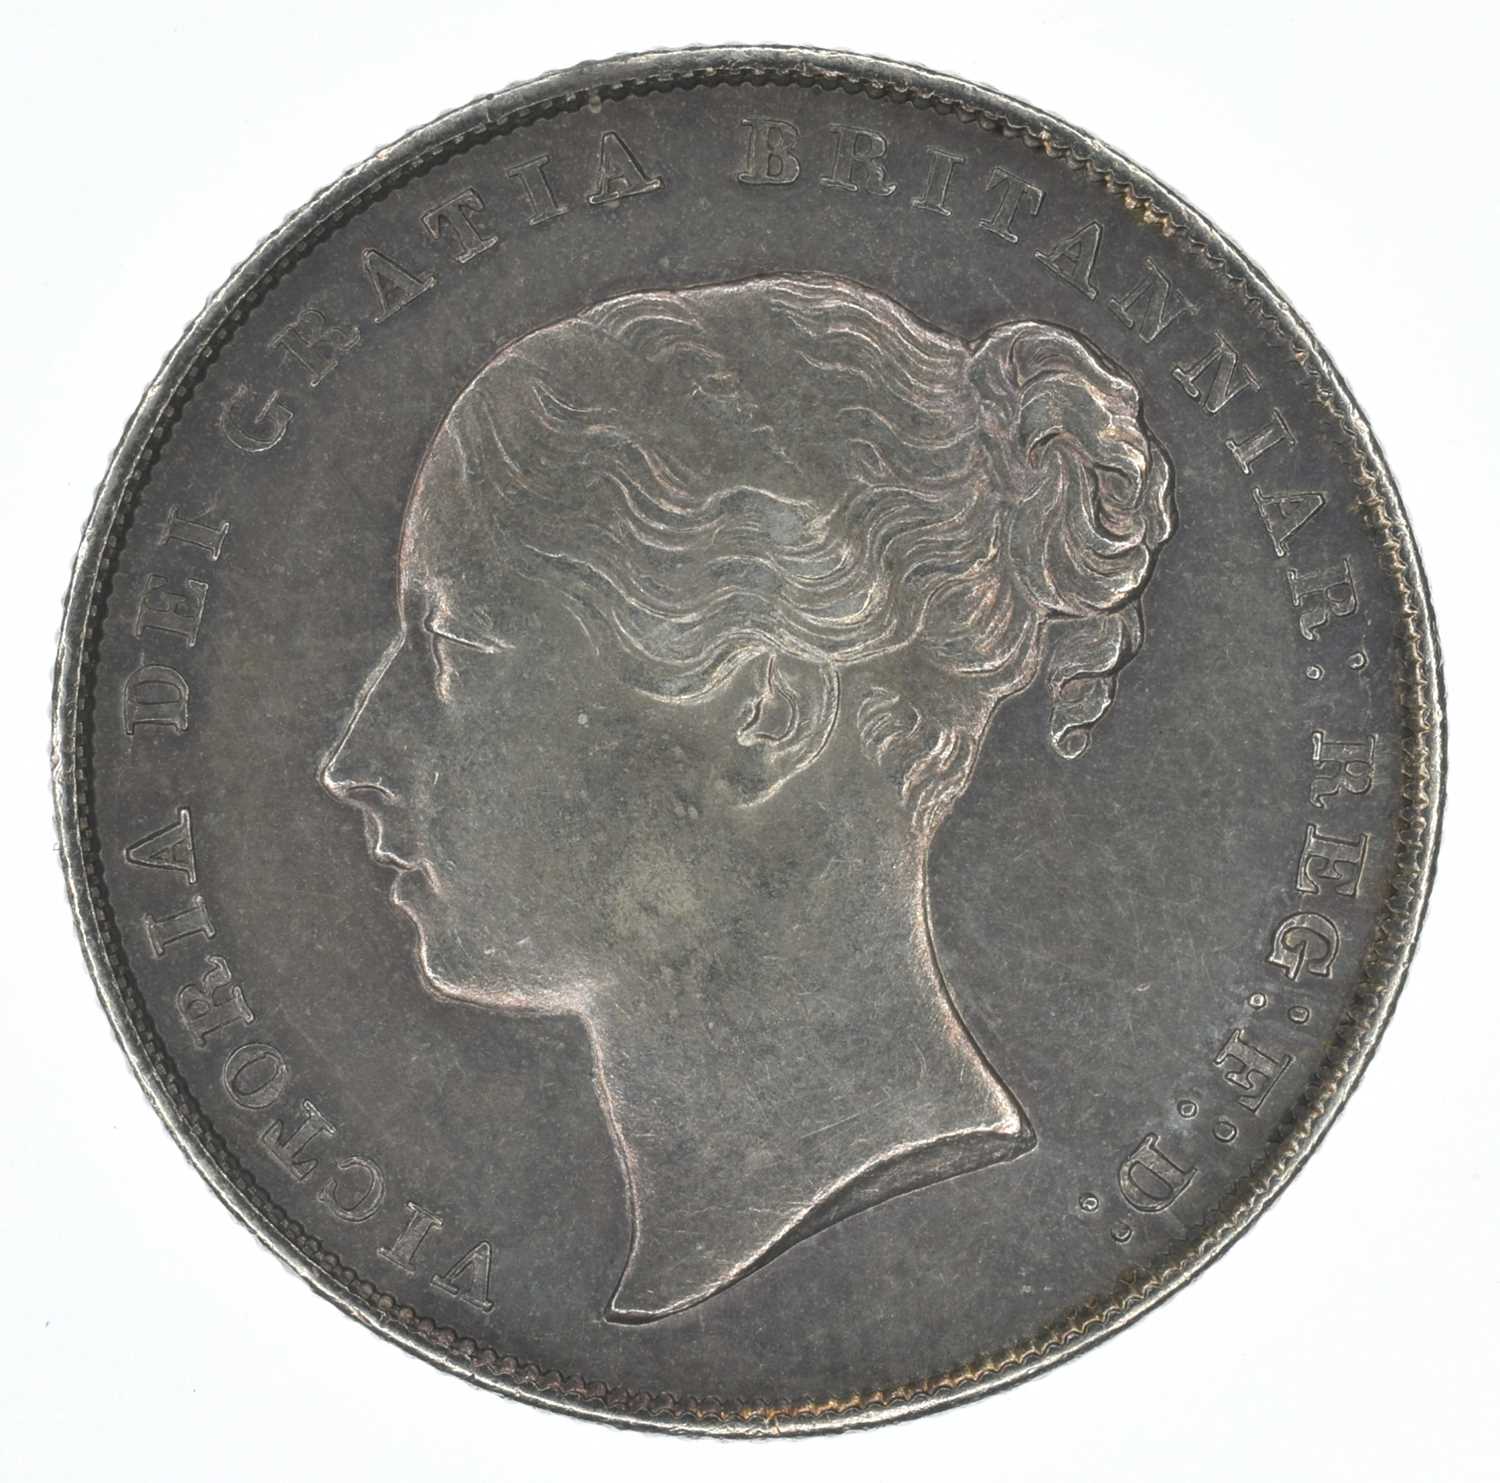 Lot 50 - Queen Victoria, Shilling, 1843, EF.